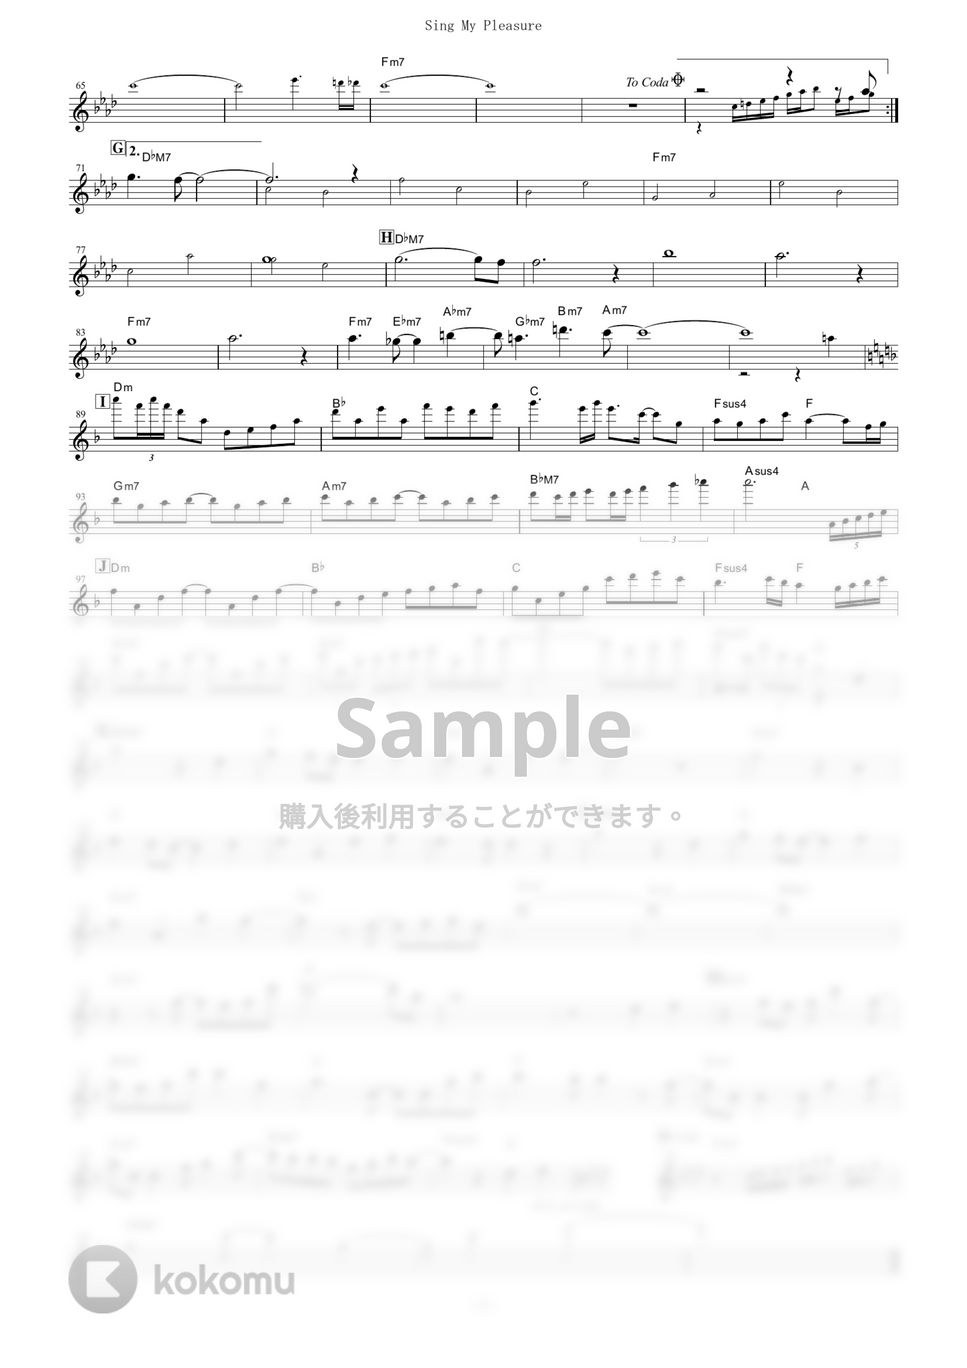 ヴィヴィ（八木海莉） - Sing My Pleasure (『Vivy -Fluorite Eye's Song-』 / in C) by muta-sax